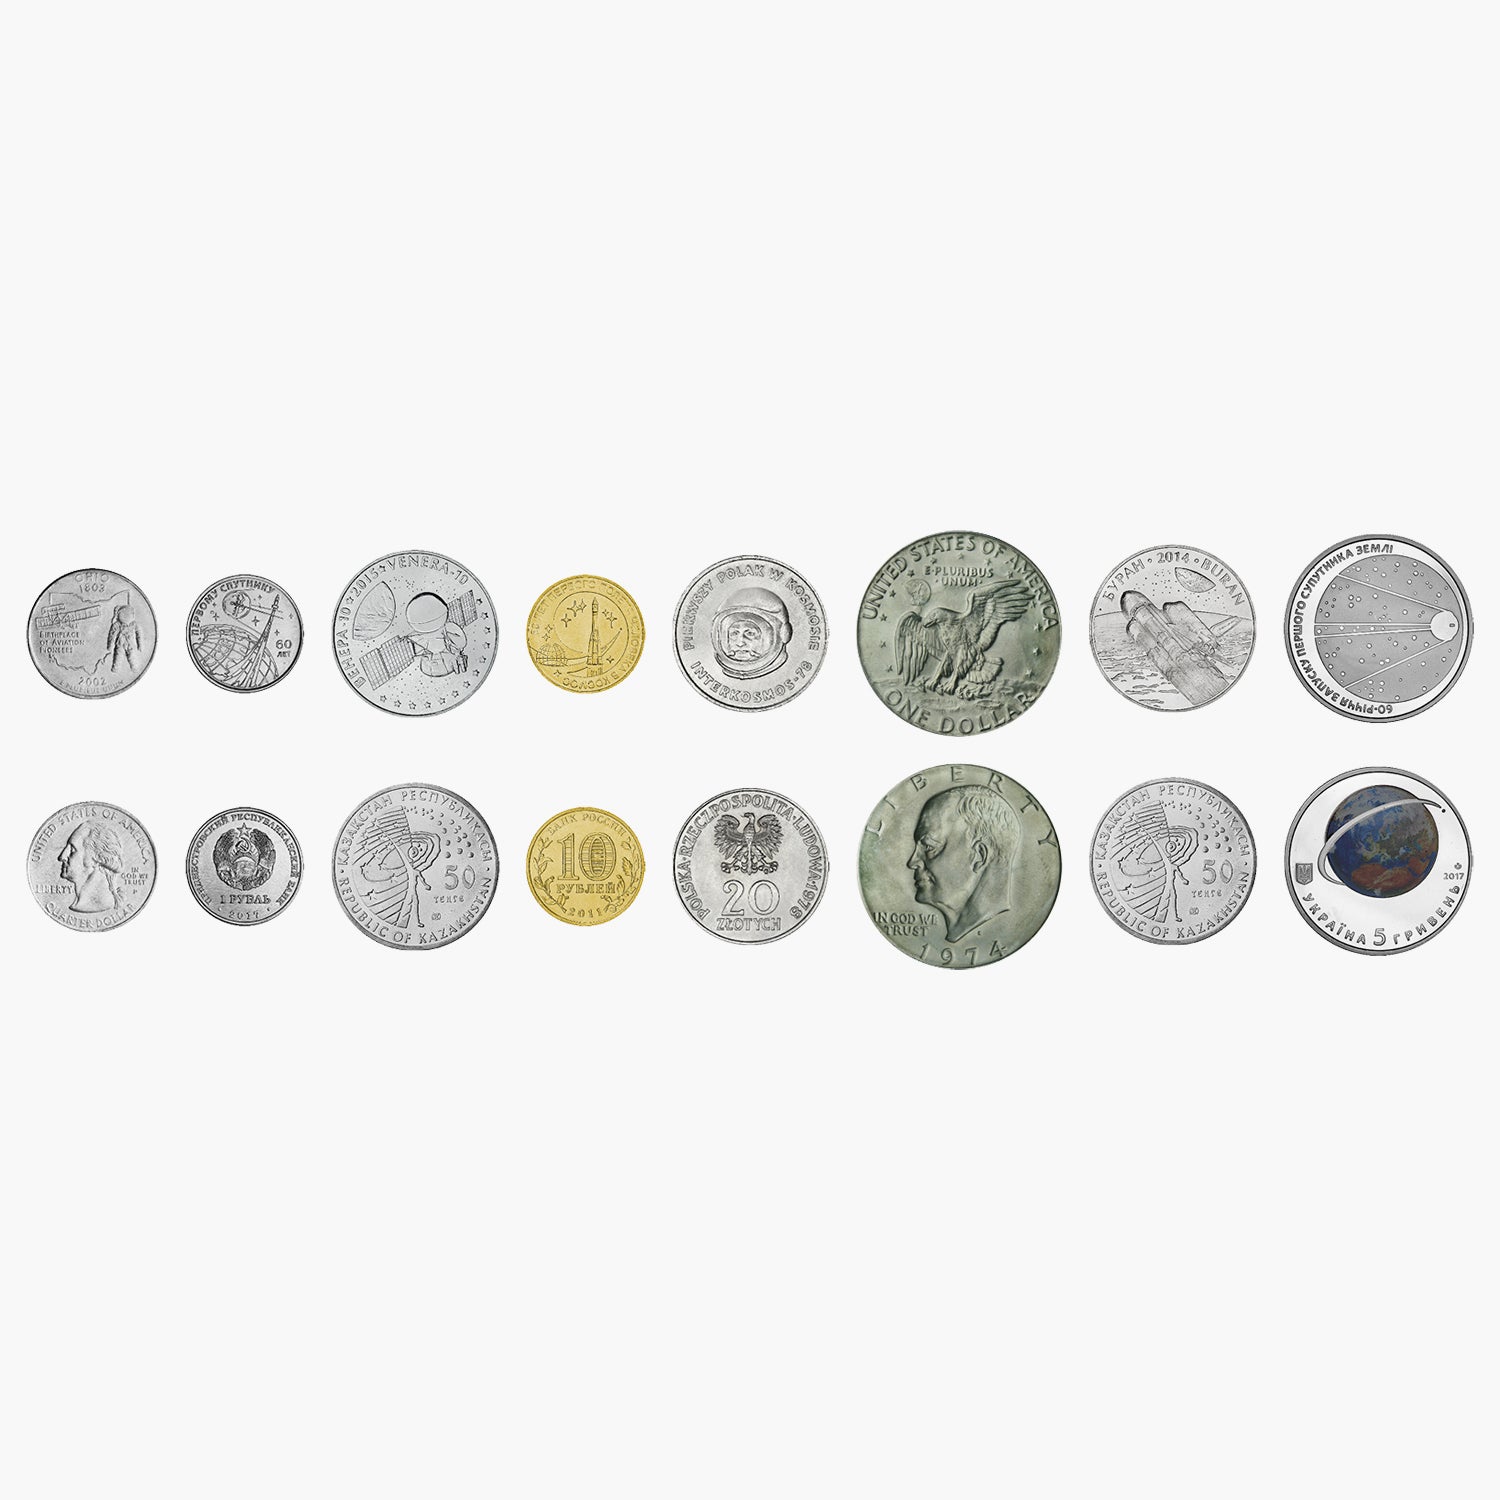 L'Histoire de l'Espace Coin Collector Edition